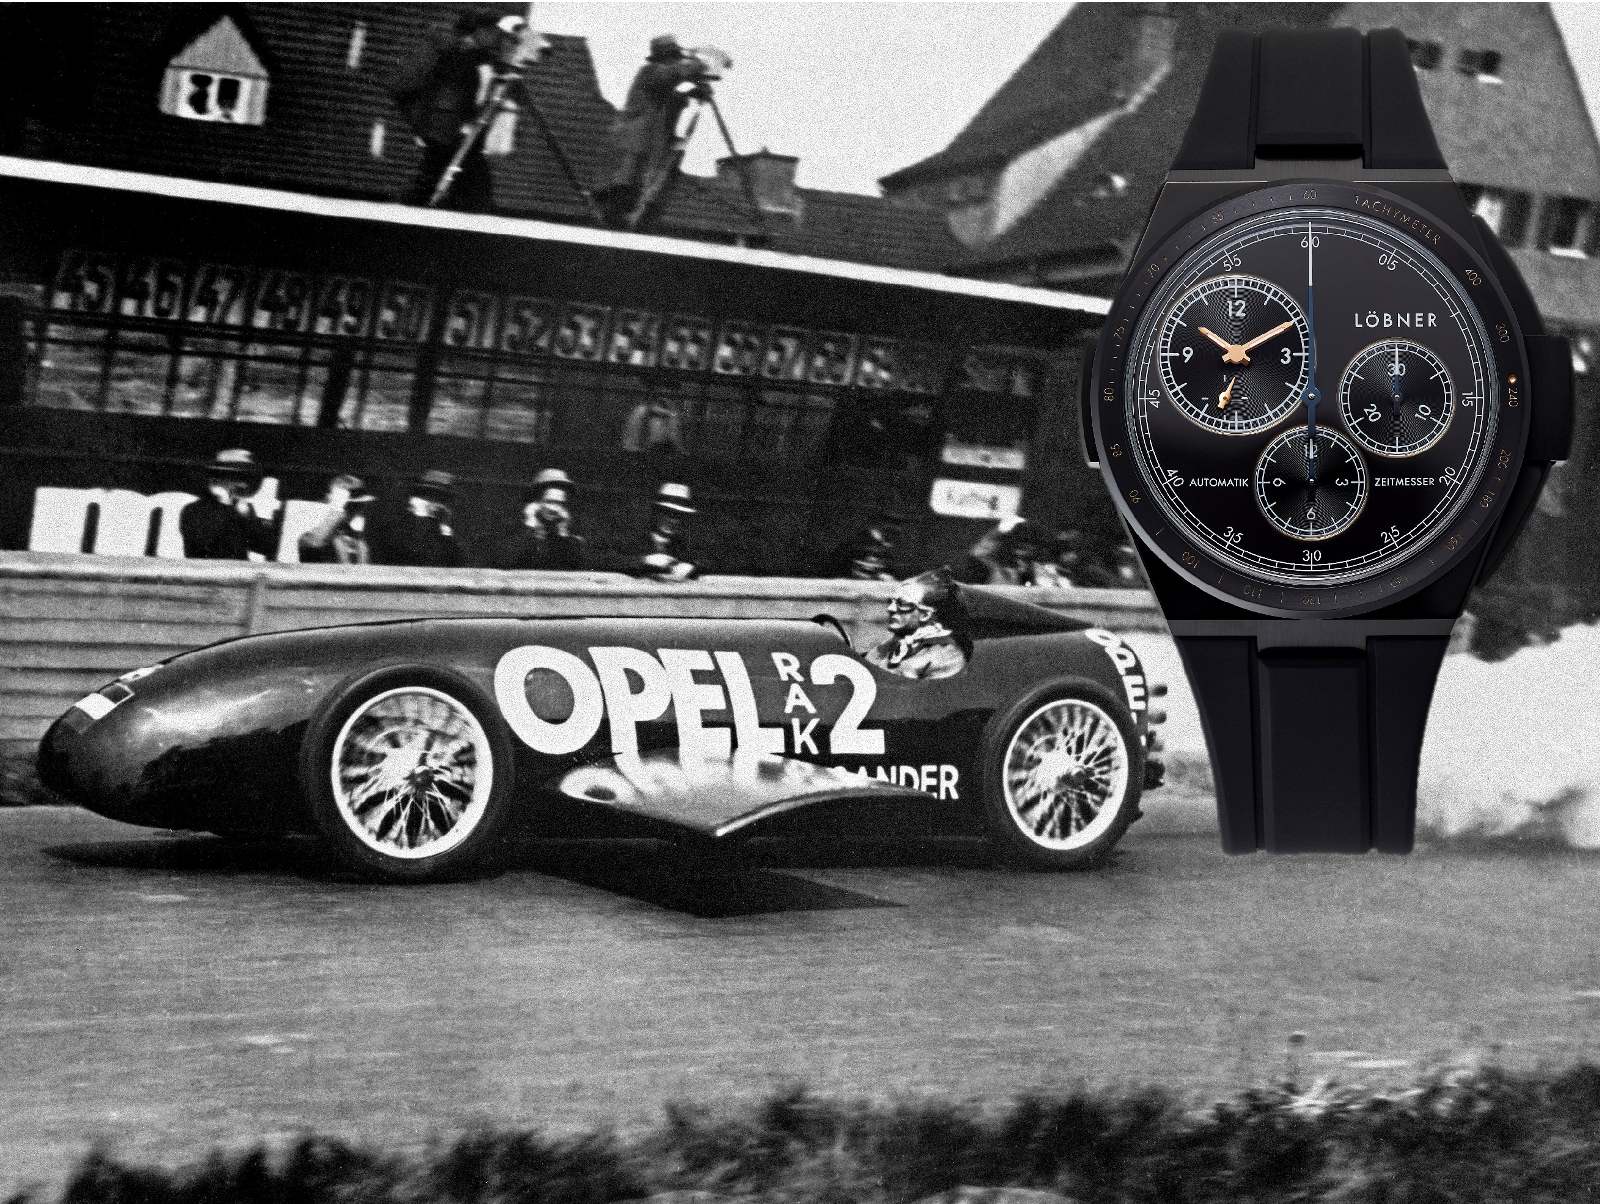 Raketenmann Fitz von Opel und der neue Löbner rocketman Chronograph